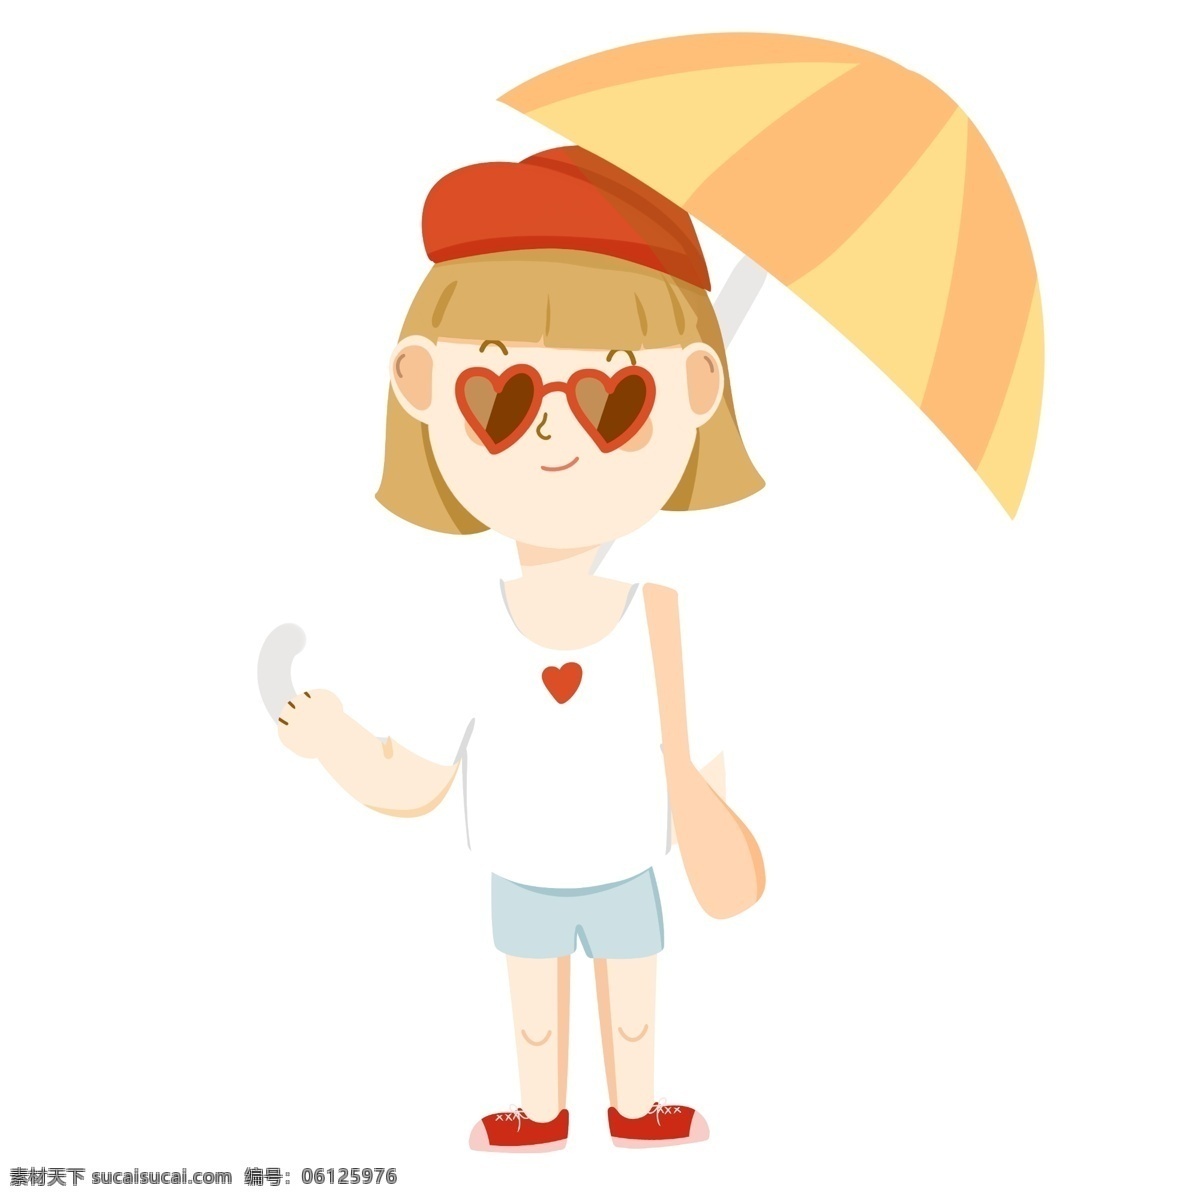 打伞的女孩 夏天 墨镜 t恤 遮阳伞 女孩